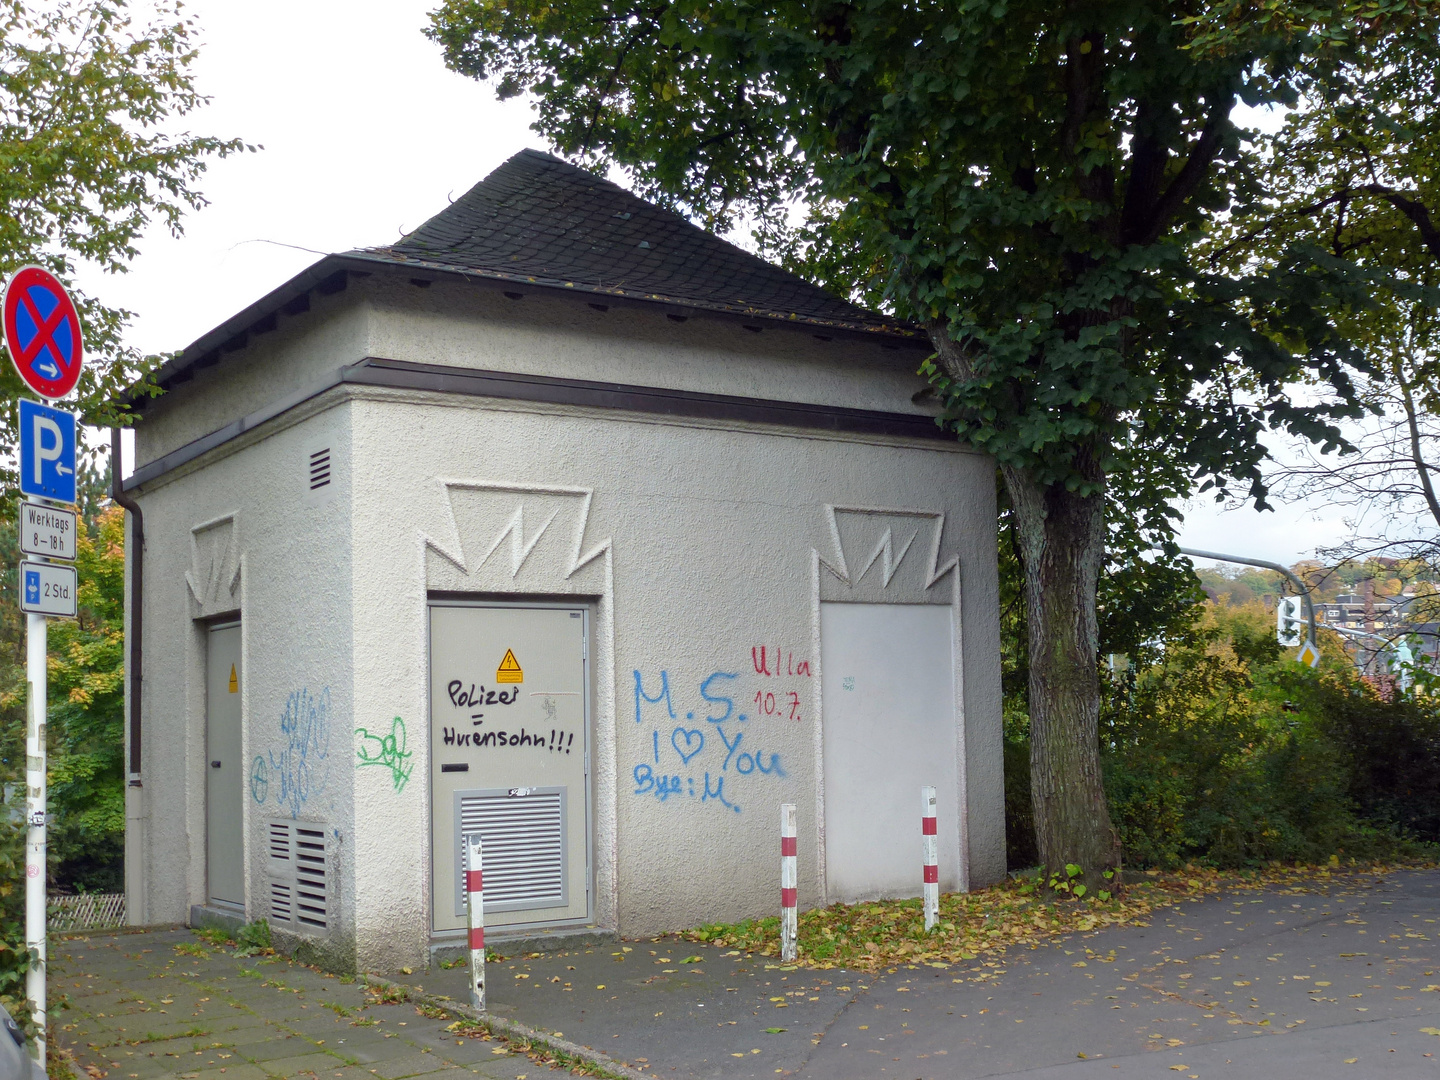 Trafostation - alte Kabelstation von 1920 in Lüdenscheid